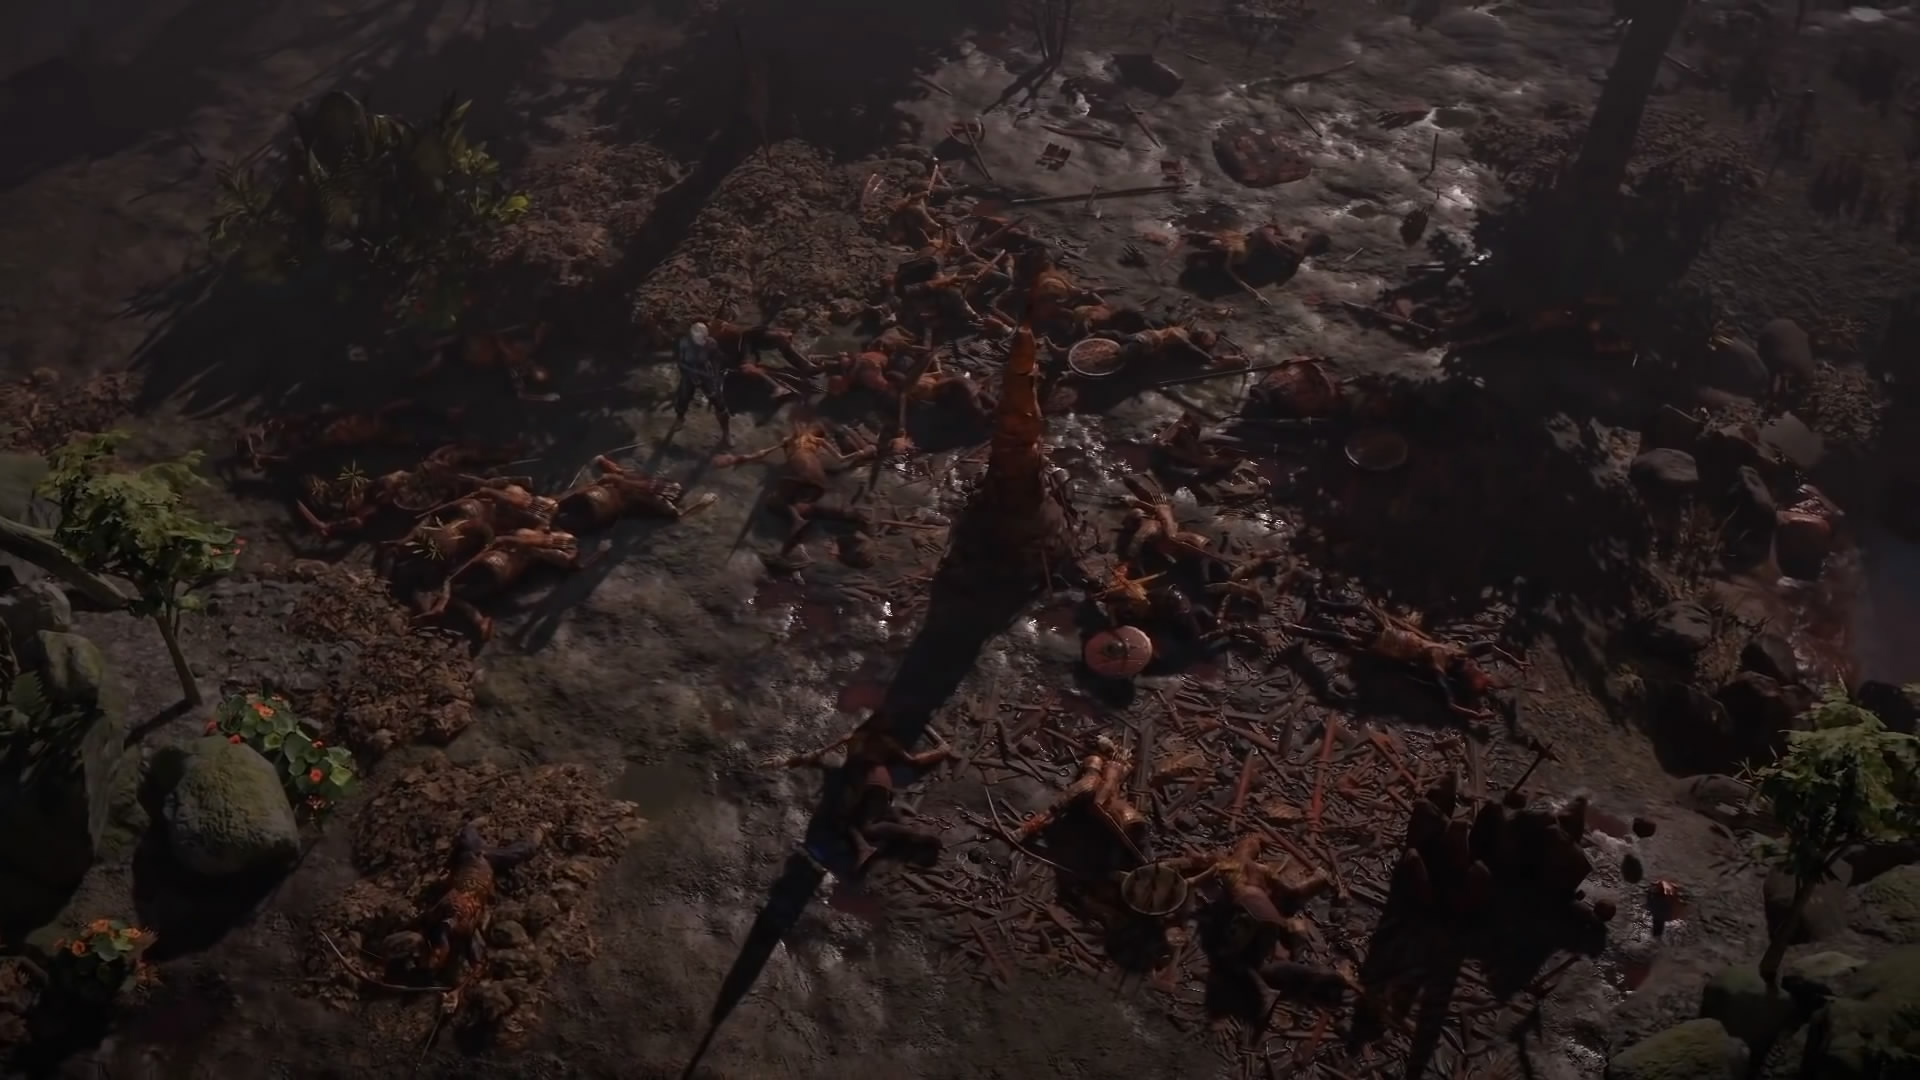 《流放之路2》幕后花絮视频 展示精美游戏画面